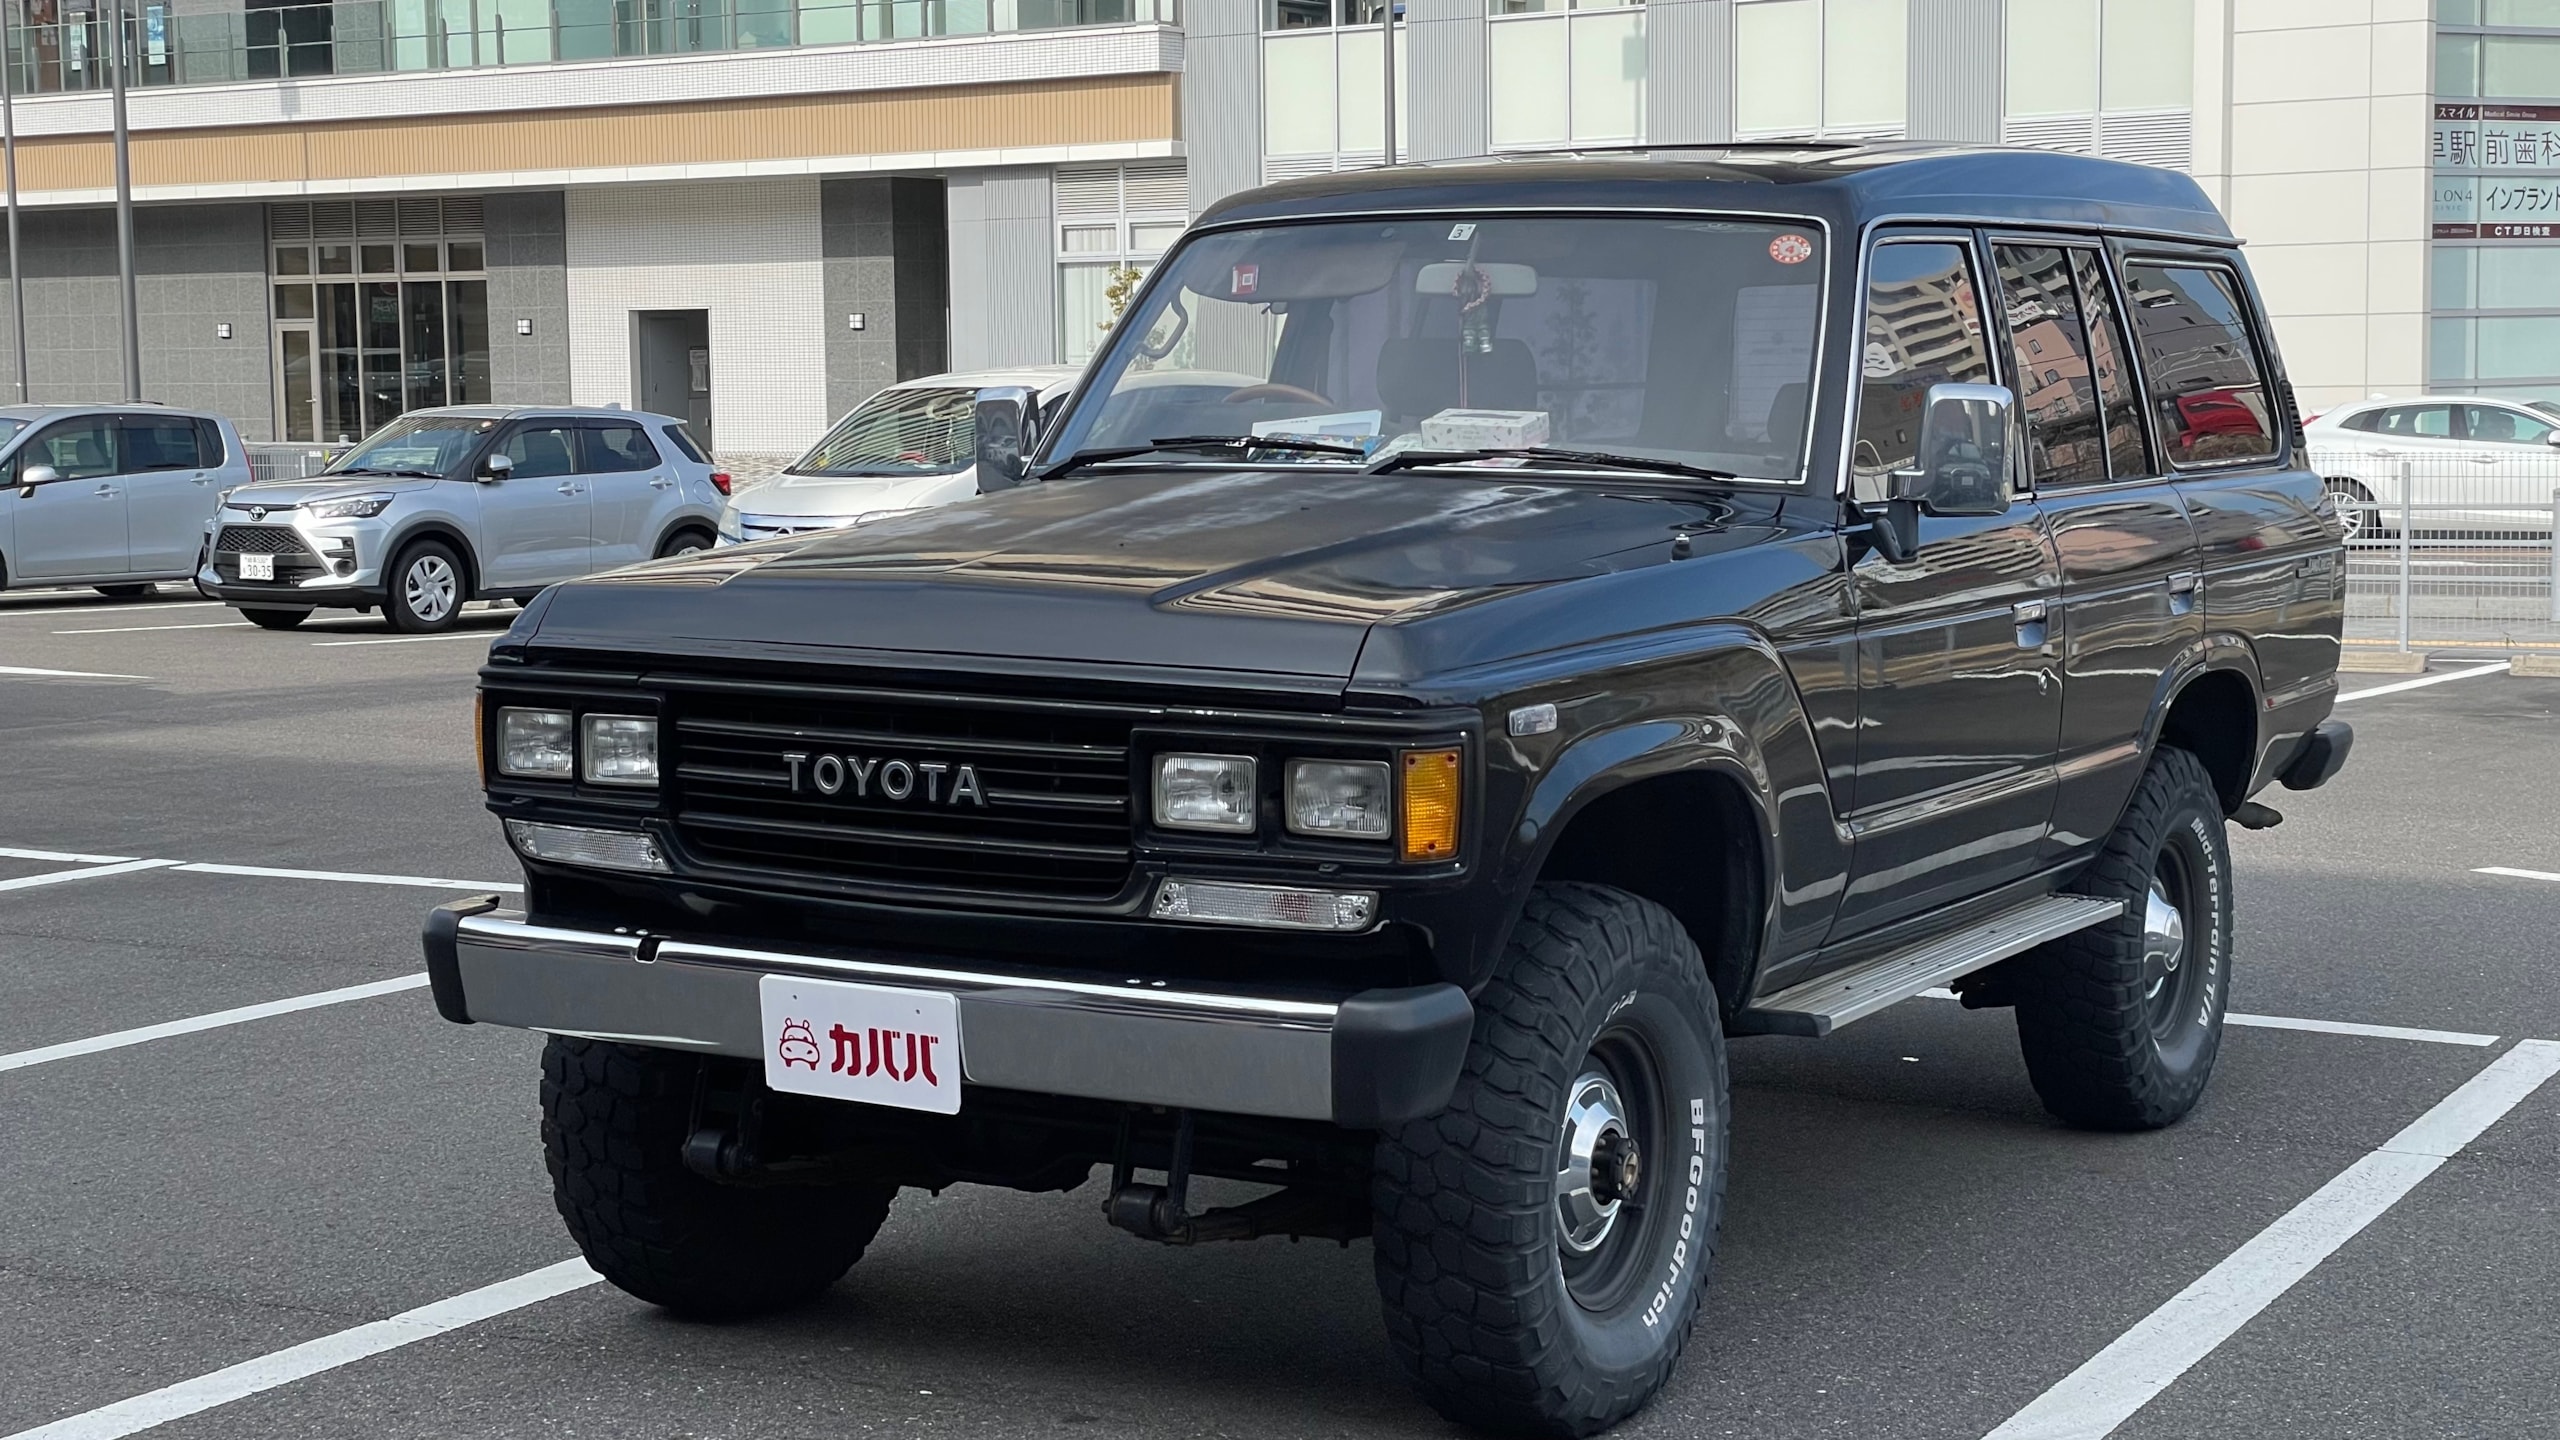 ランドクルーザー60 GX ハイルーフ(トヨタ)1989年式 250万円の中古車 - 自動車フリマ(車の個人売買)。カババ